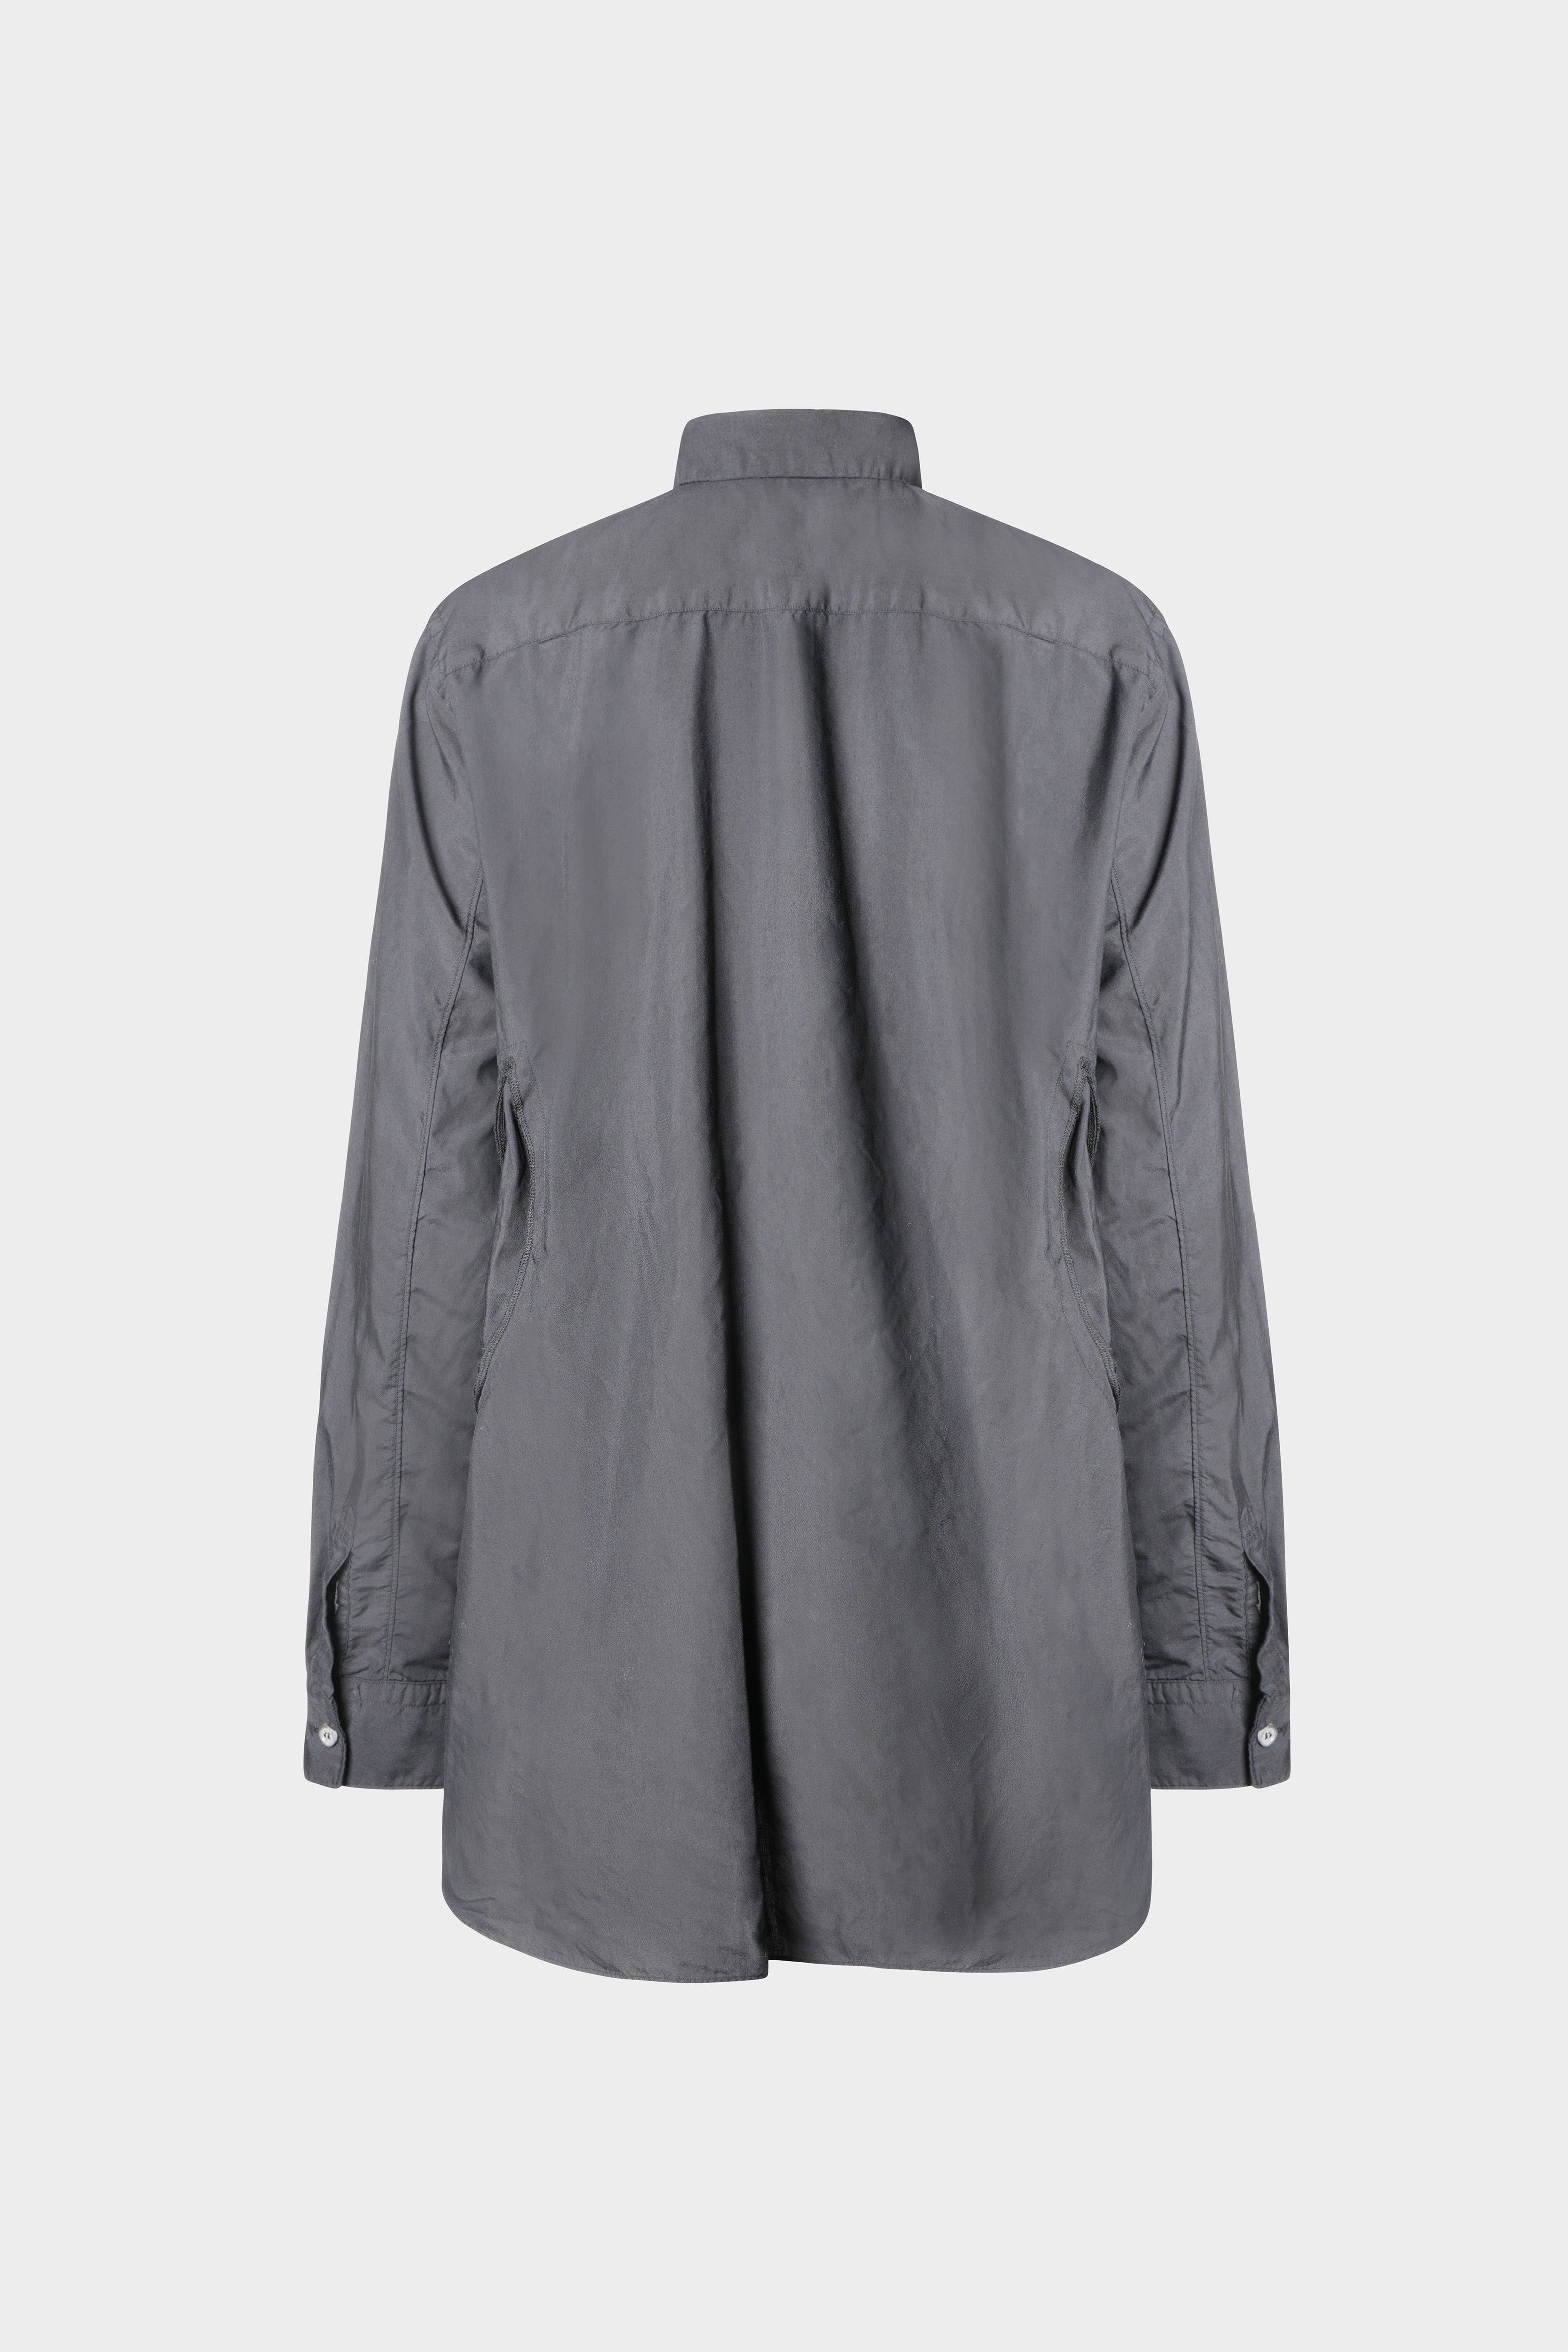 Selectshop FRAME - COMME DES GARÇONS BLACK Unisex Shirt Shirts Concept Store Dubai